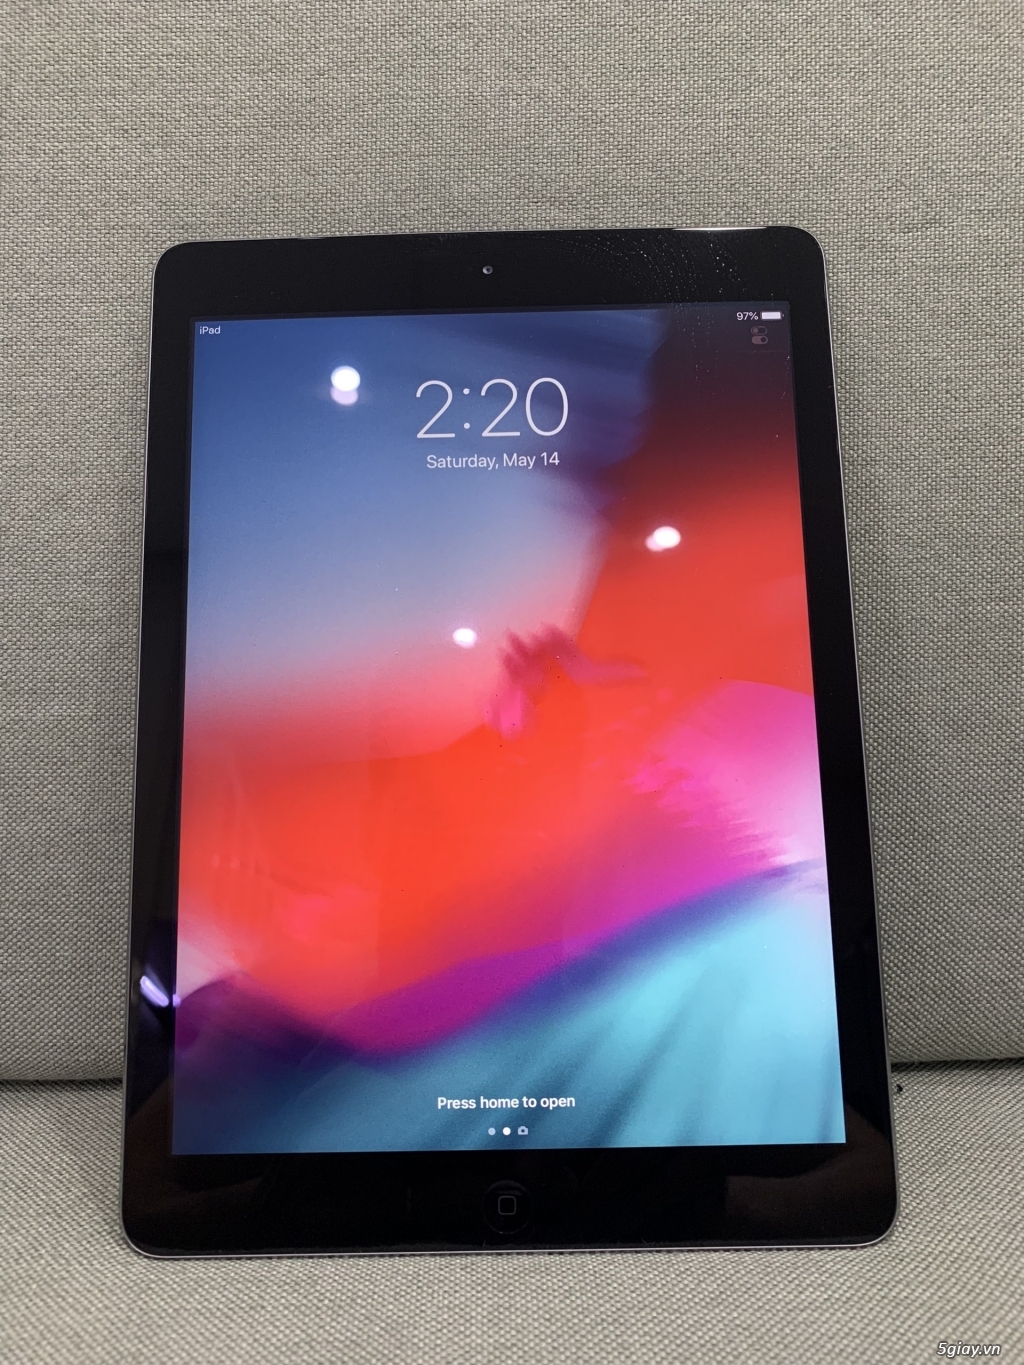 Apple iPad Air 2 & iPad Air 1, bản Wifi, hàng Mỹ, nguyên zin giá rẻ - 1